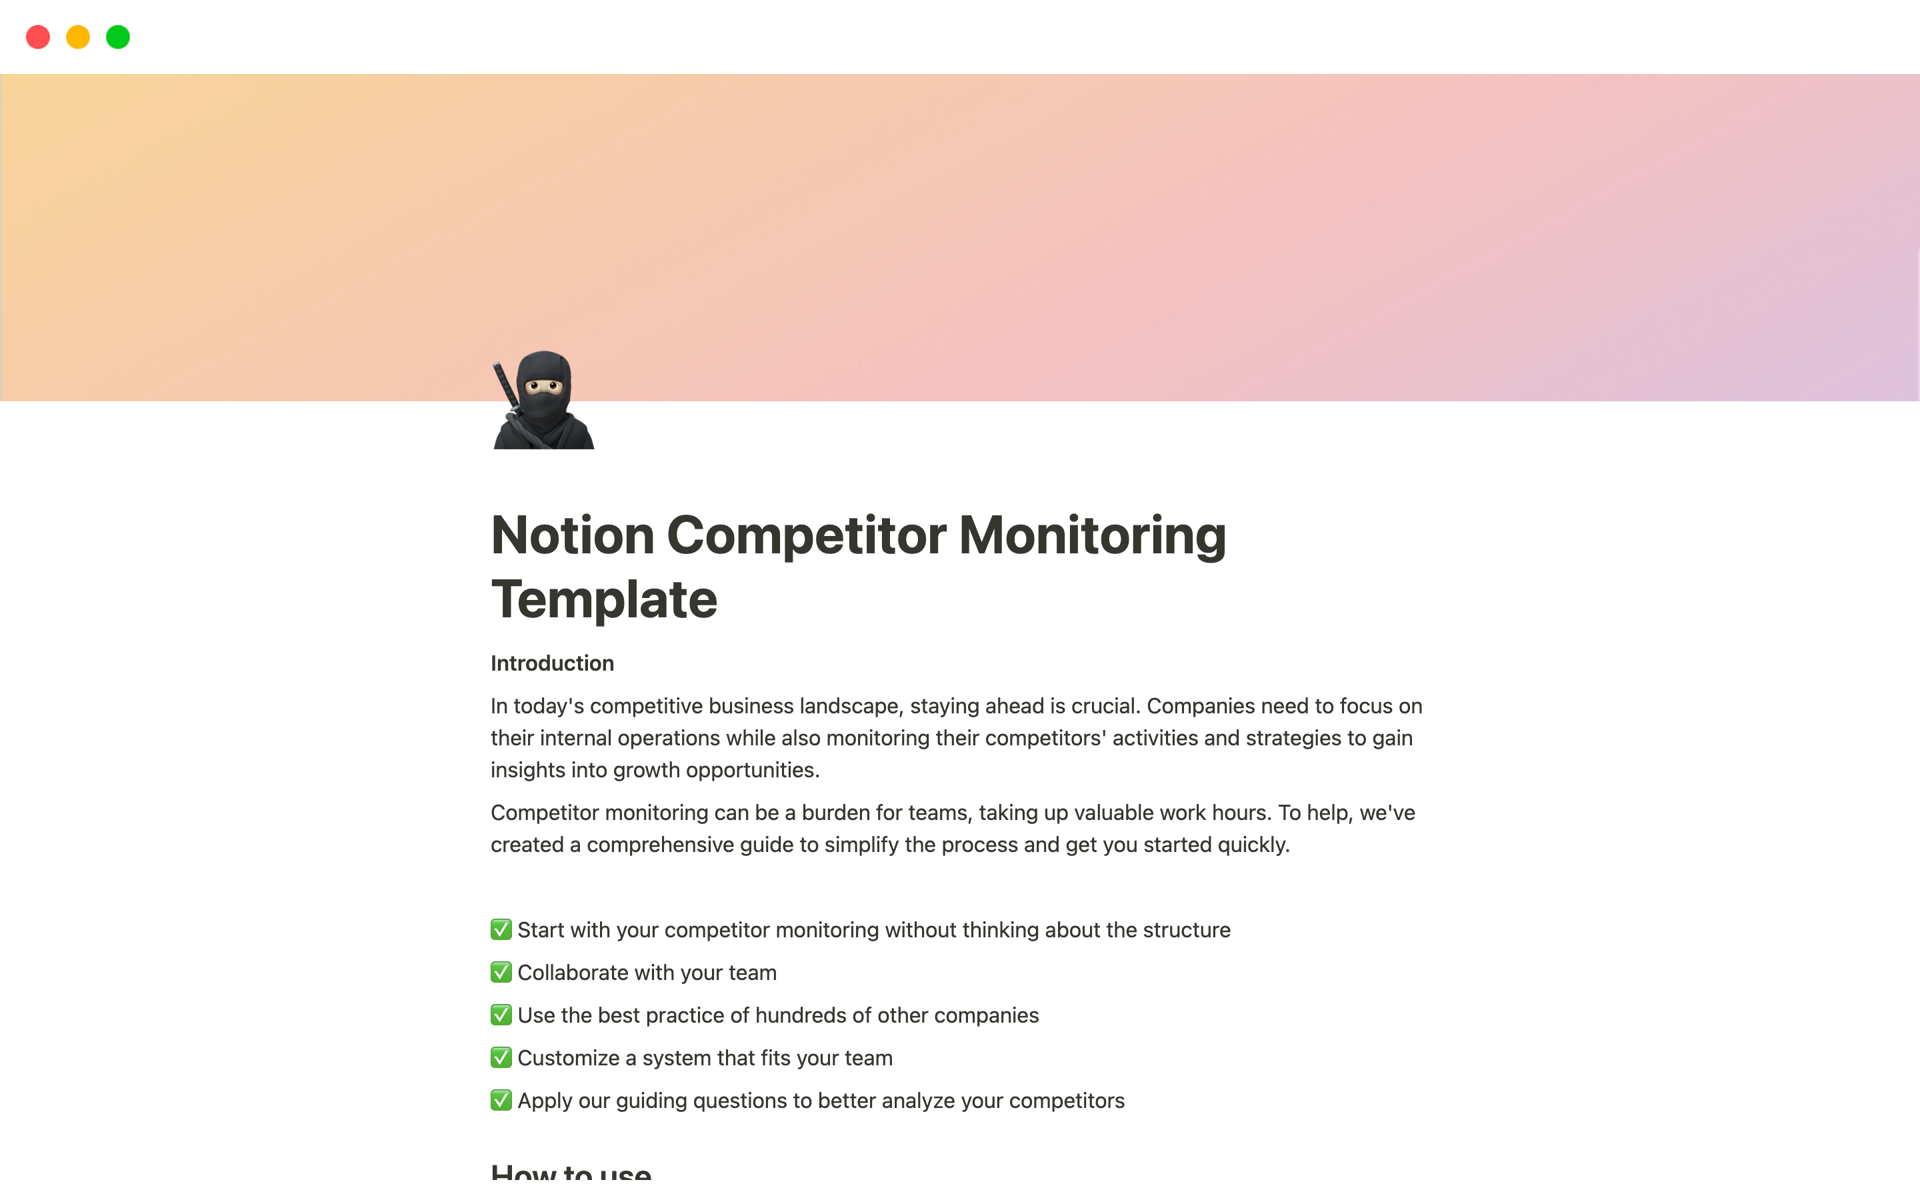 En förhandsgranskning av mallen för Notion Competitor Monitoring Template